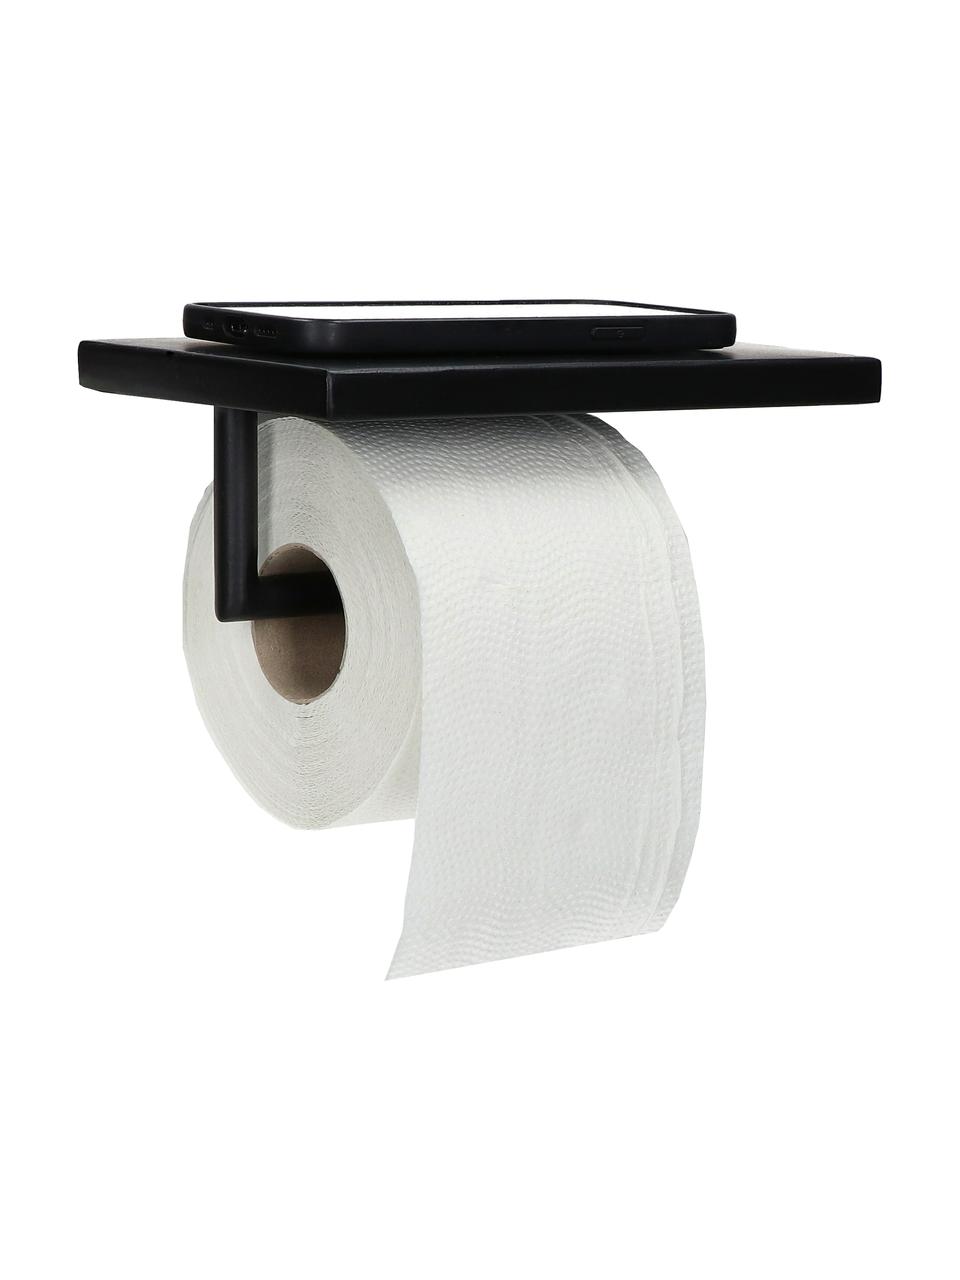 Toiletpapierhouder Fritz met plank in zwart, Gecoat metaal, Zwart, B 20 x H 8 cm